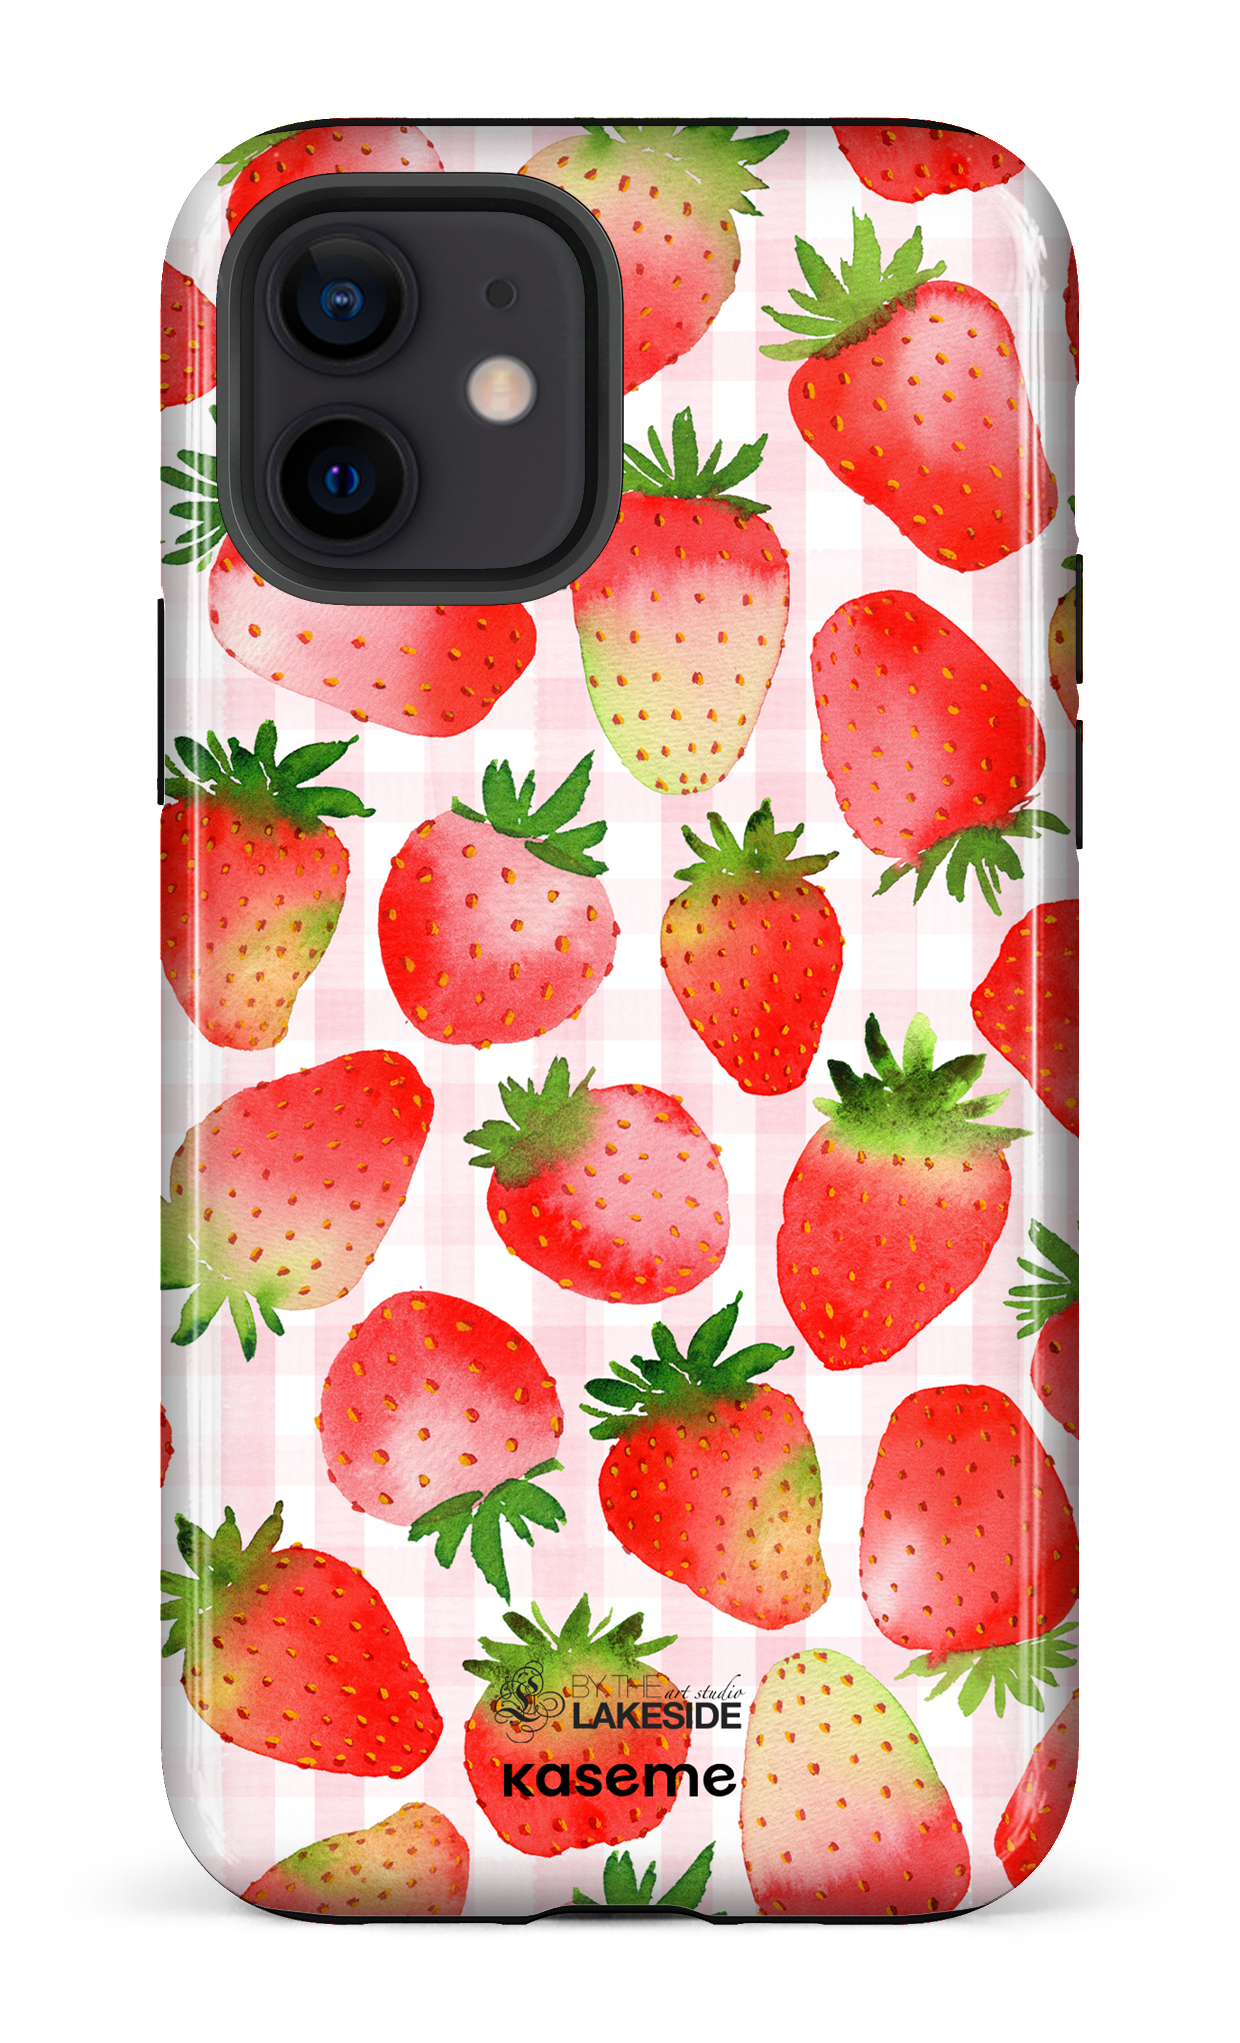 Strawberry Fields by Pooja Umrani - iPhone 12